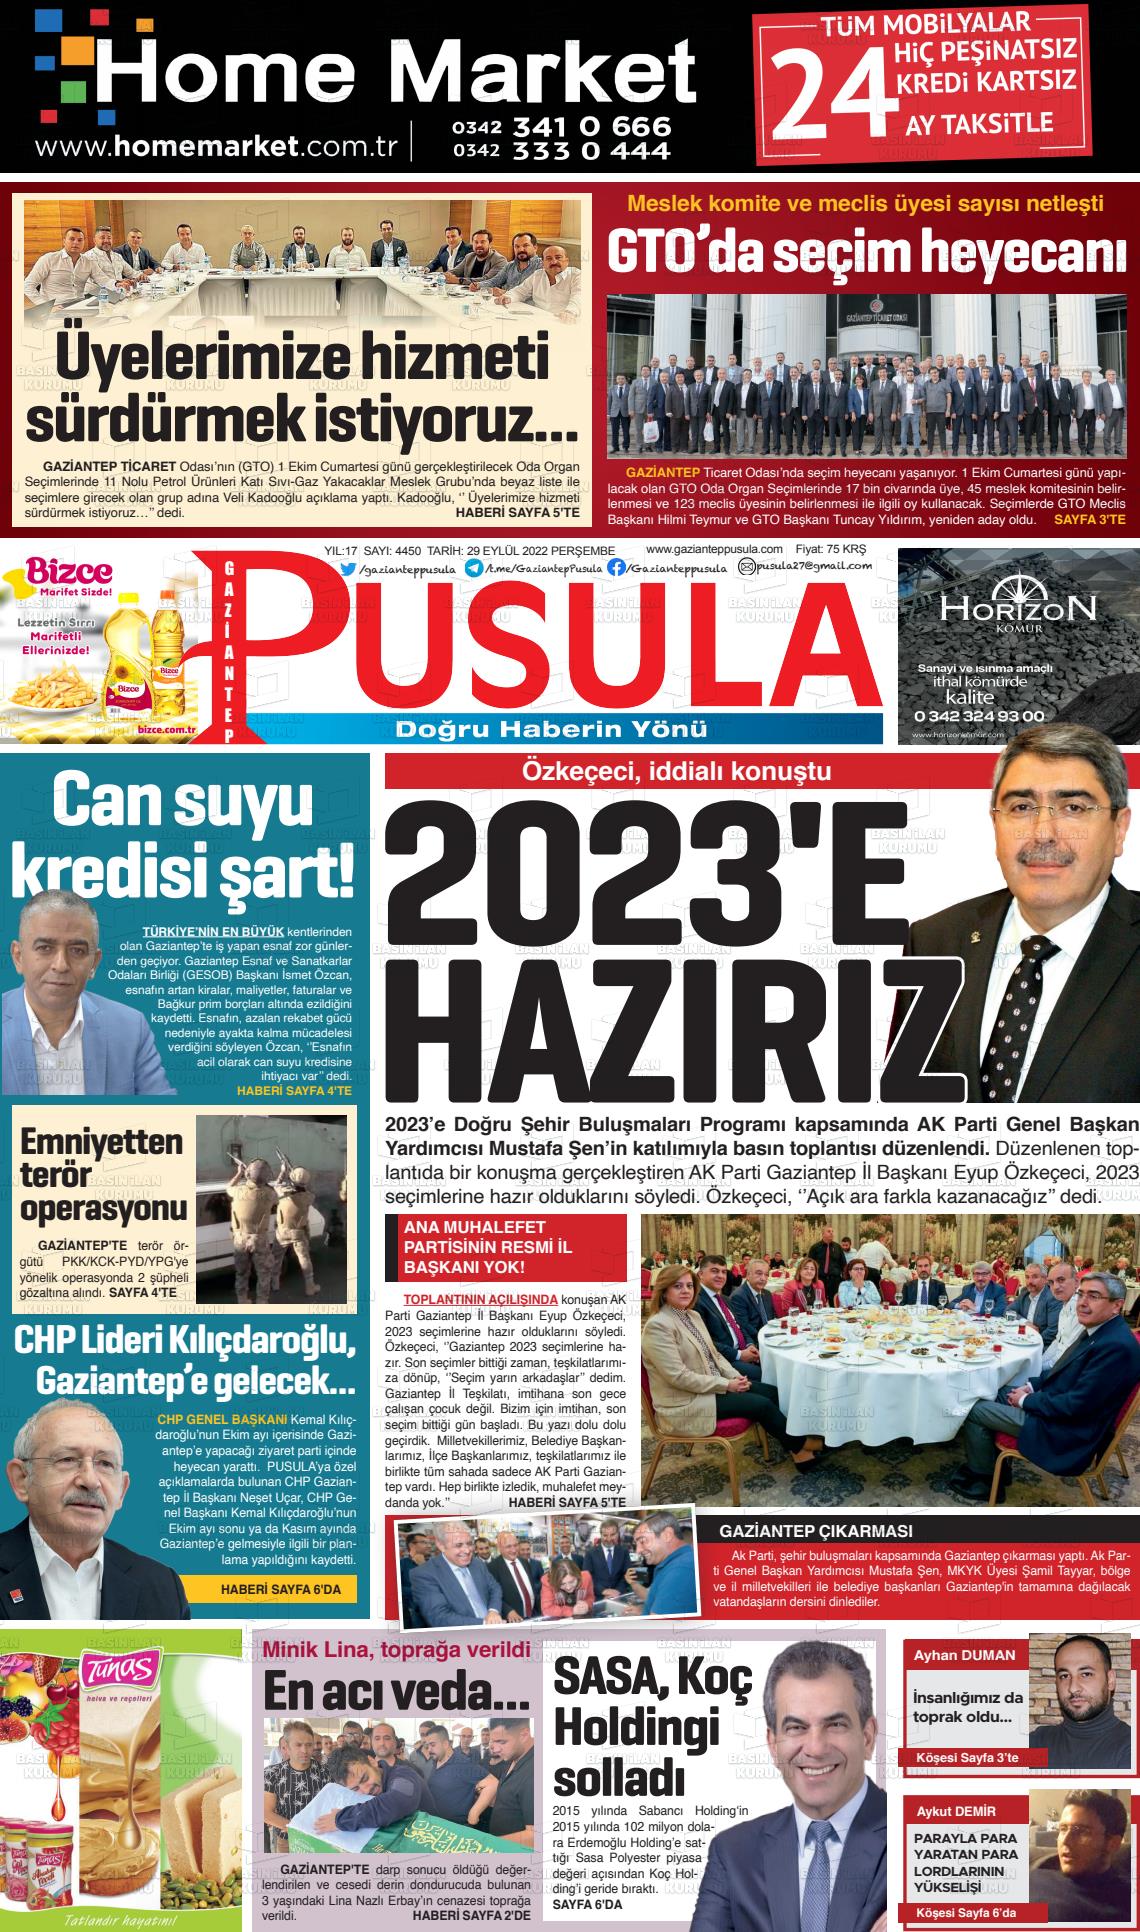 29 Eylül 2022 Gaziantep Pusula Gazete Manşeti